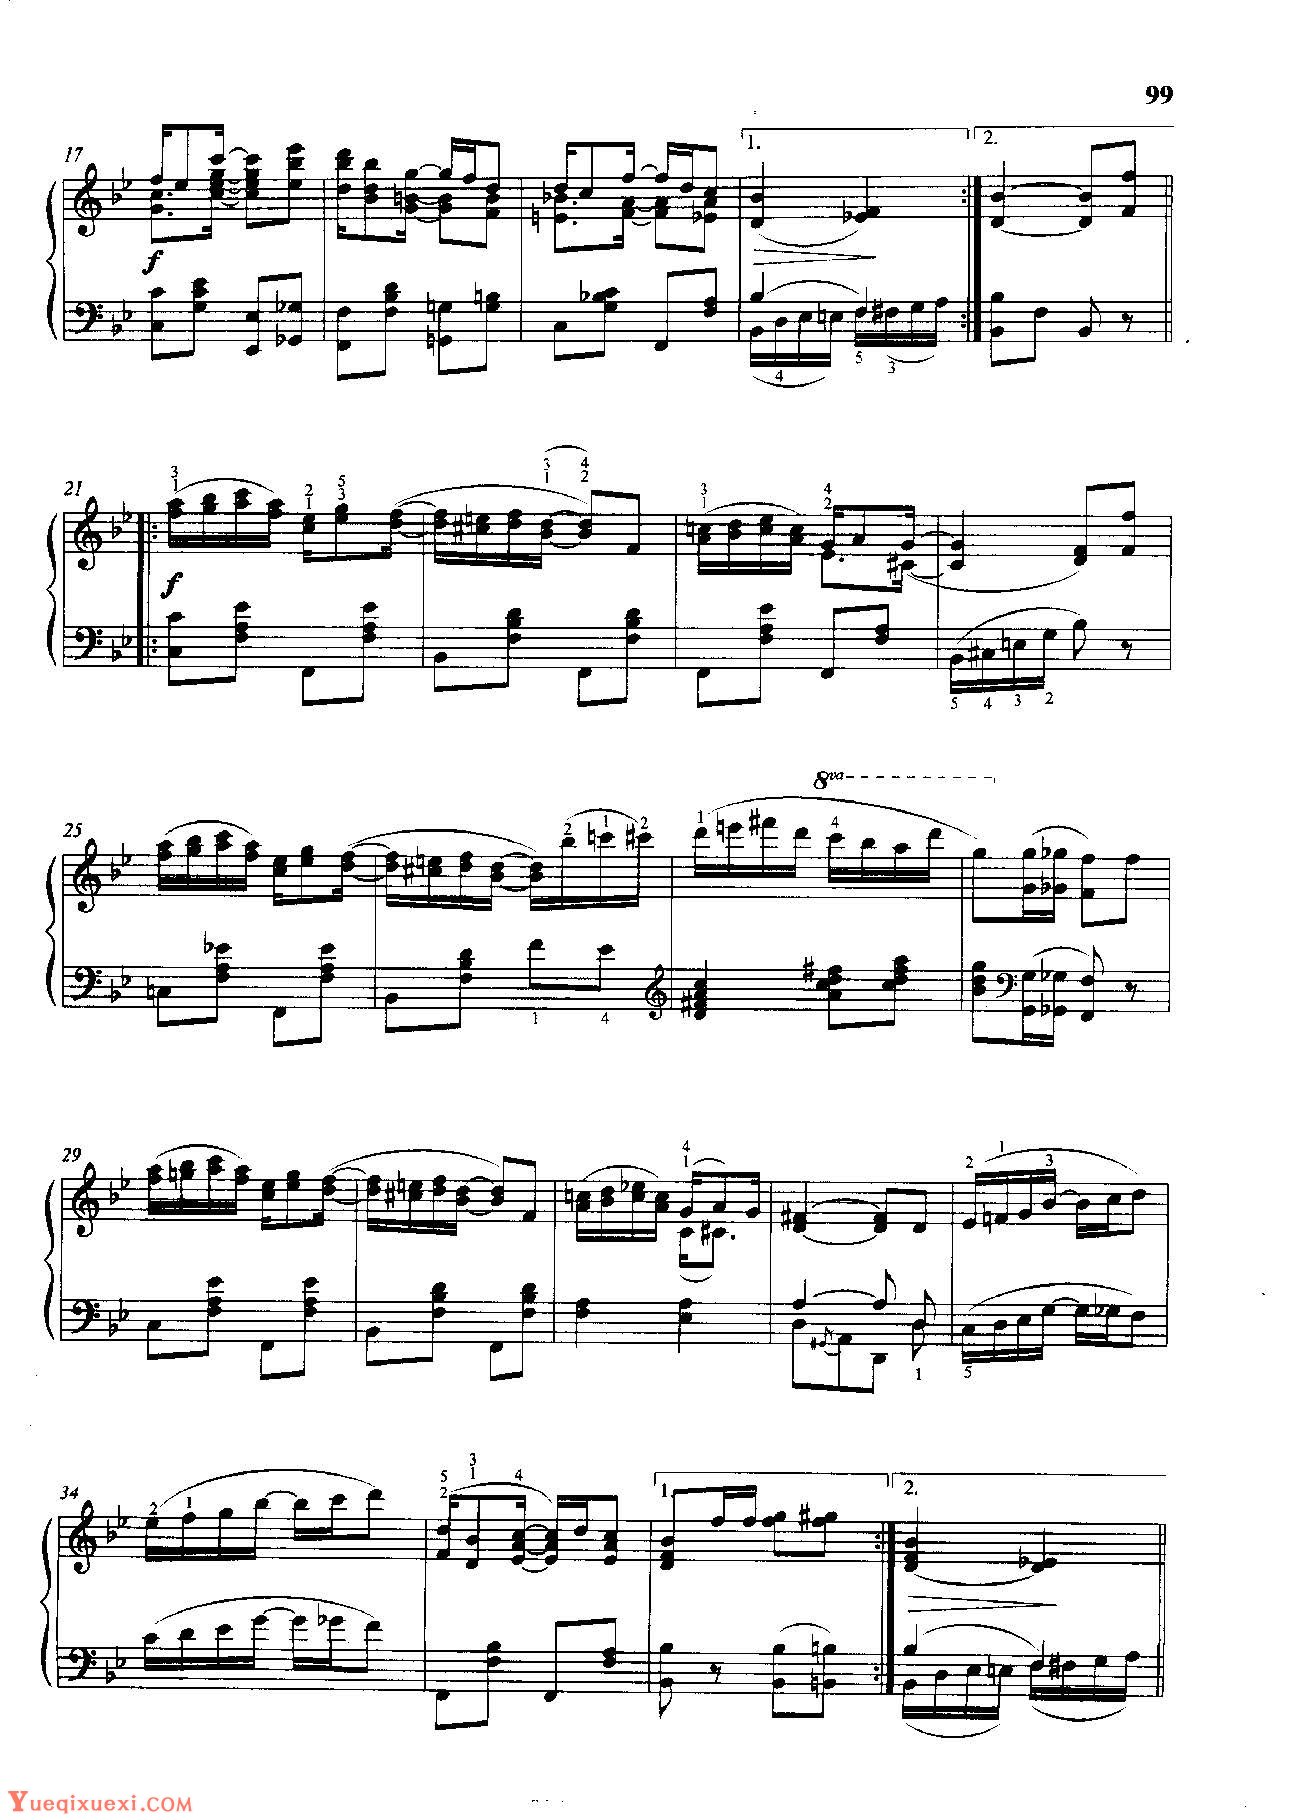 雷格泰姆钢琴乐谱《无花果树叶雷格》雷格泰姆之王斯科特·乔普林